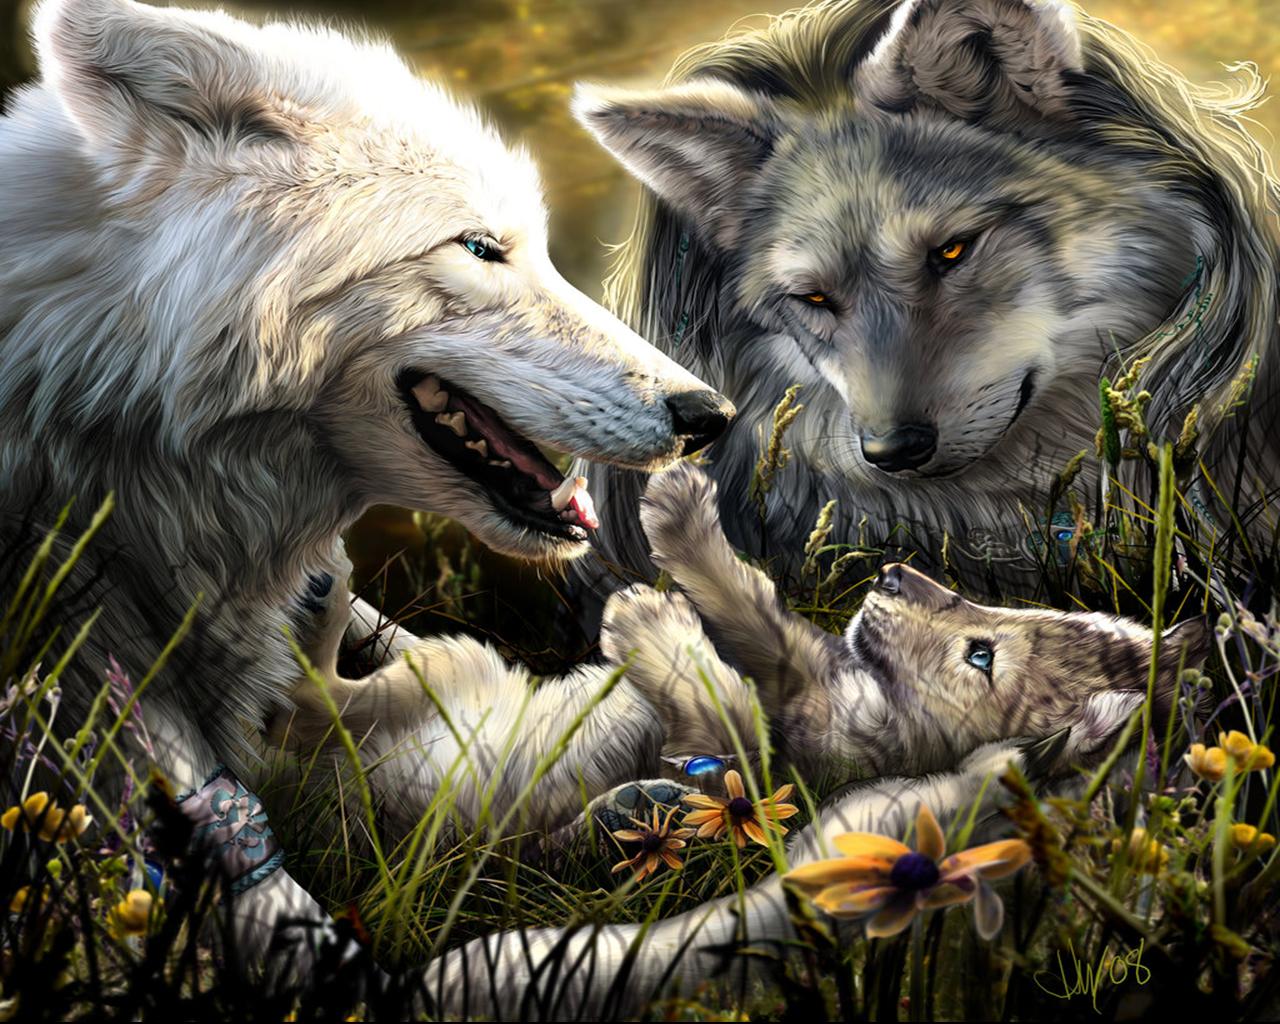 fond d'écran de loup gratuit,loup,faune,canis lupus tundrarum,chien inuit du nord,mythologie